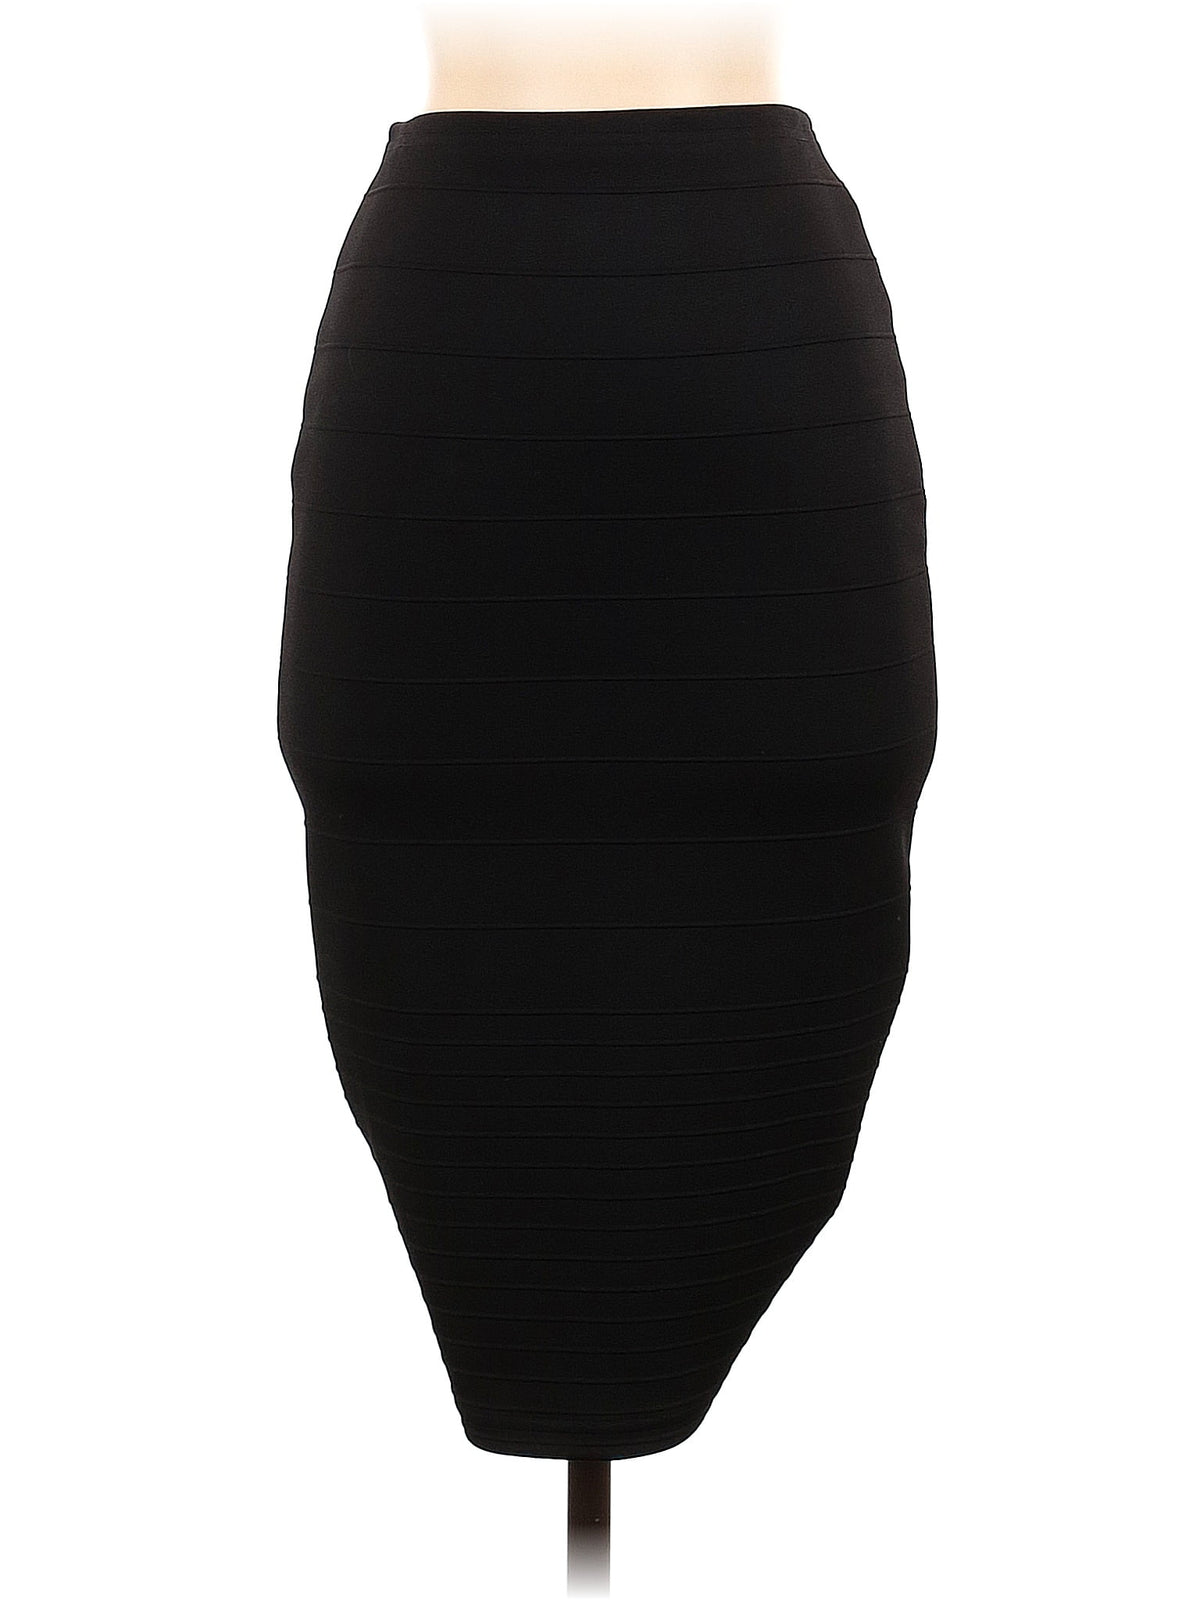 Formal Skirt size - 4